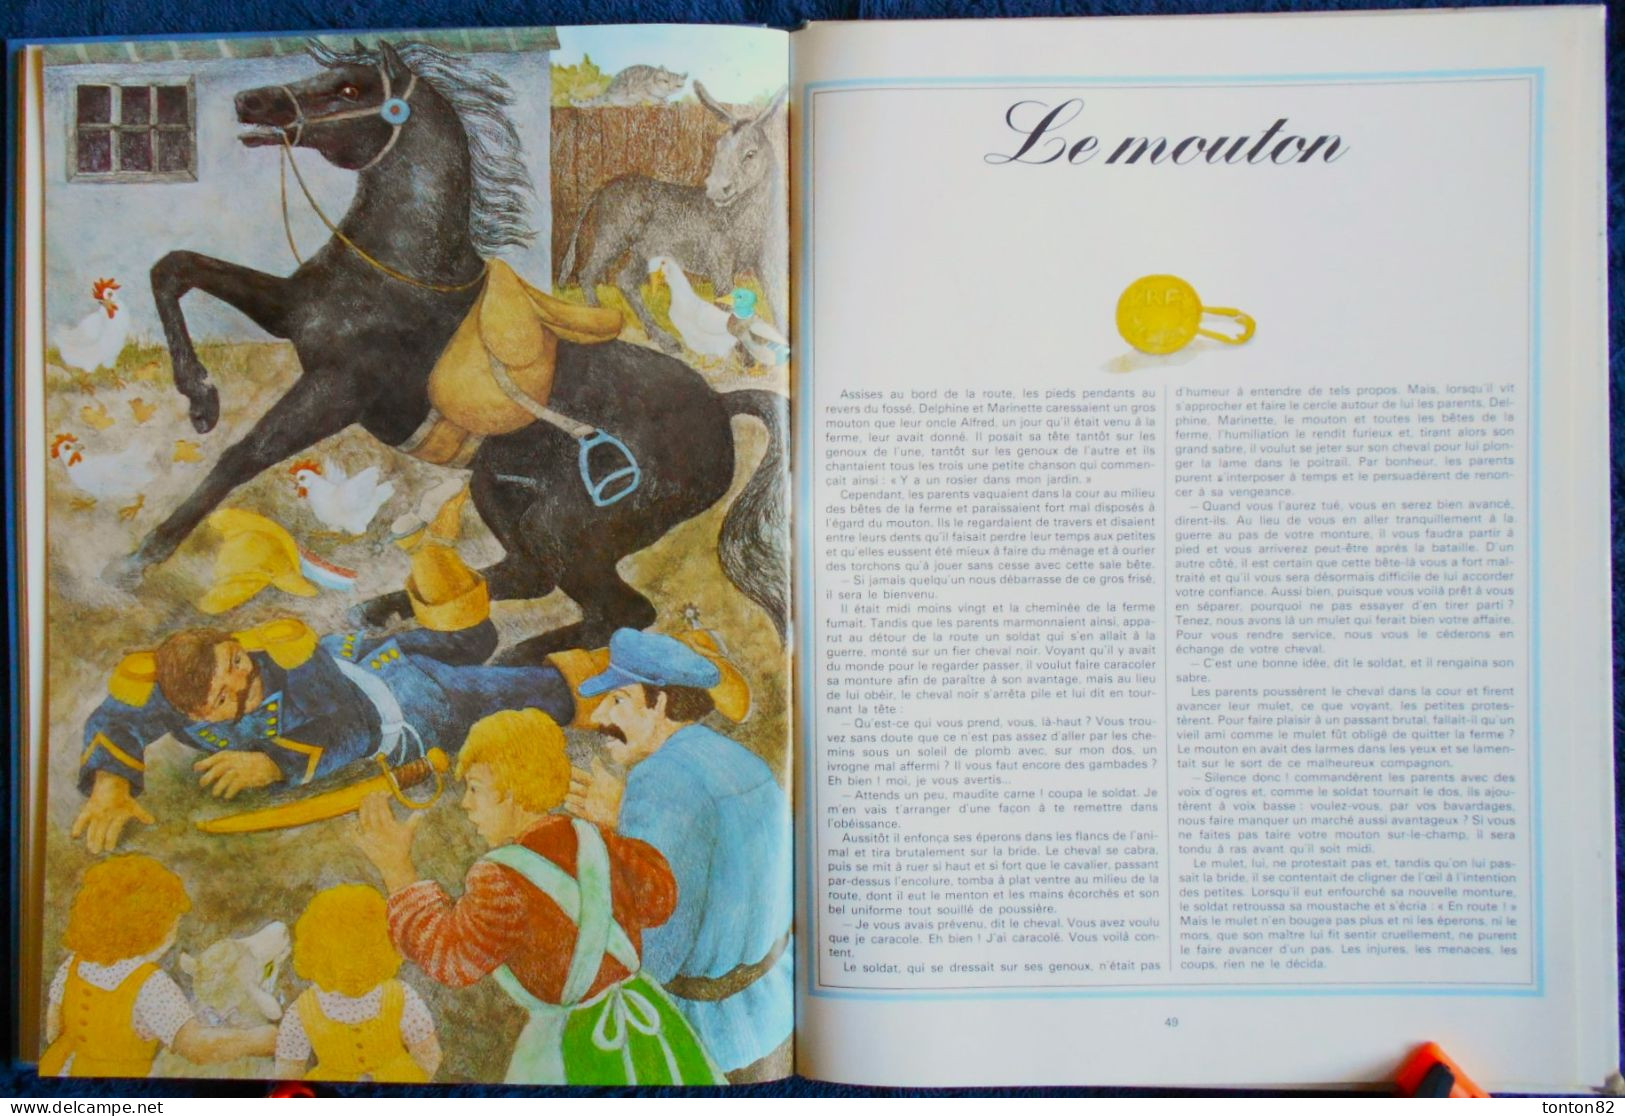 Marcel Aymé - Les Contes Bleus du Chat Perché - Illustré par Éléonore Schmid - Gallimard - ( 1978 ) .